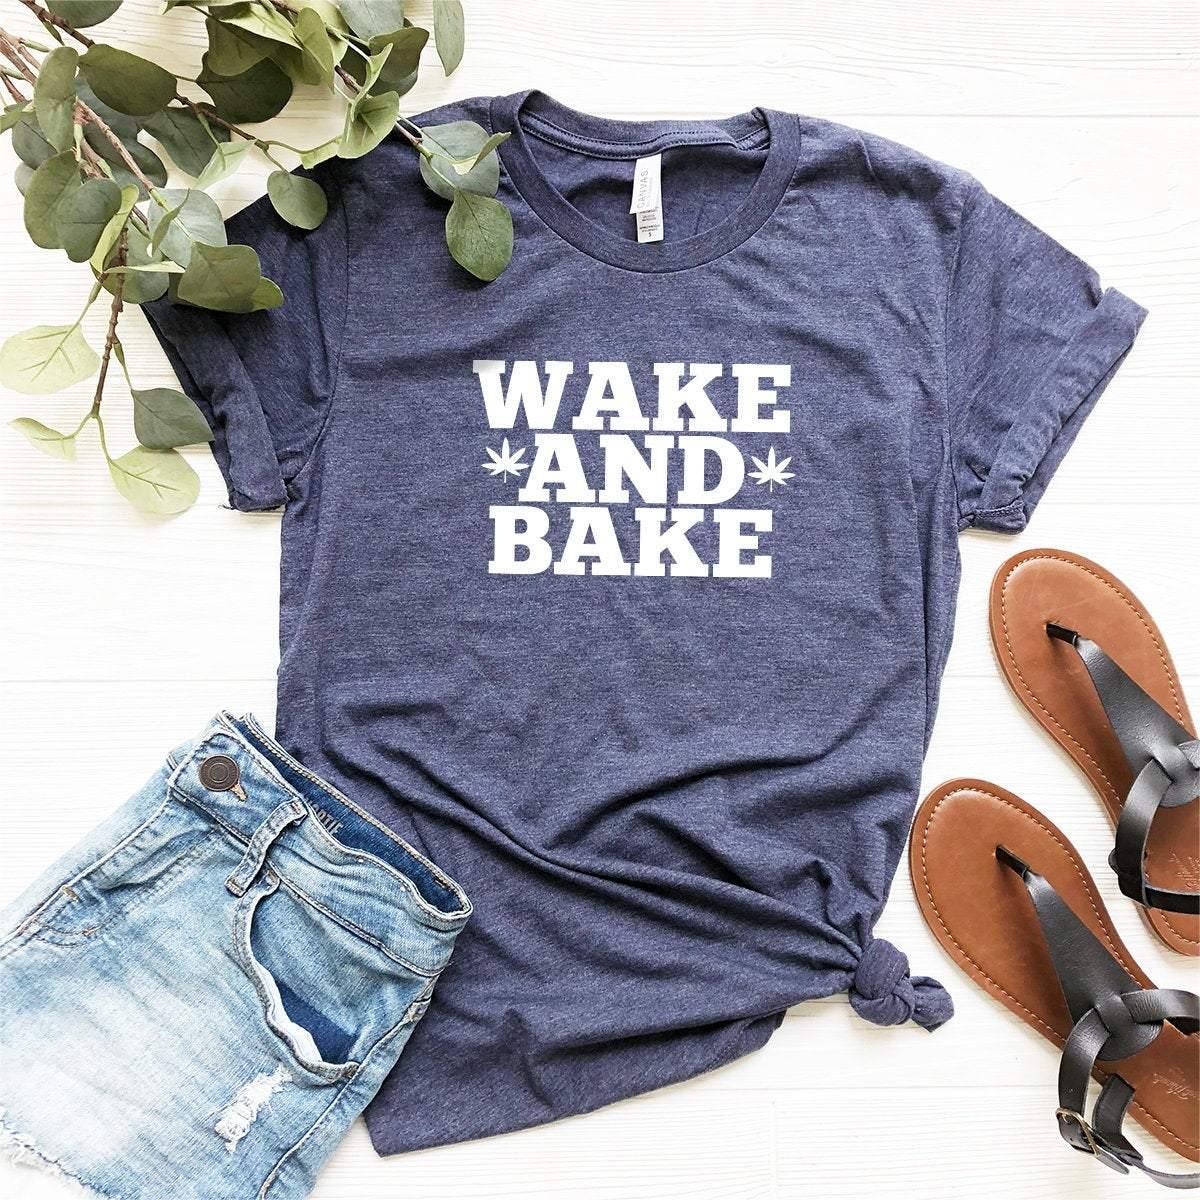 Wake And Bake Shirt, Weed Shirt, Weed T-shirt, Weed Tee, Funny Weed Shirt, Marijuana Shirt, Stoner Shirt,420 Shirt - Fastdeliverytees.com